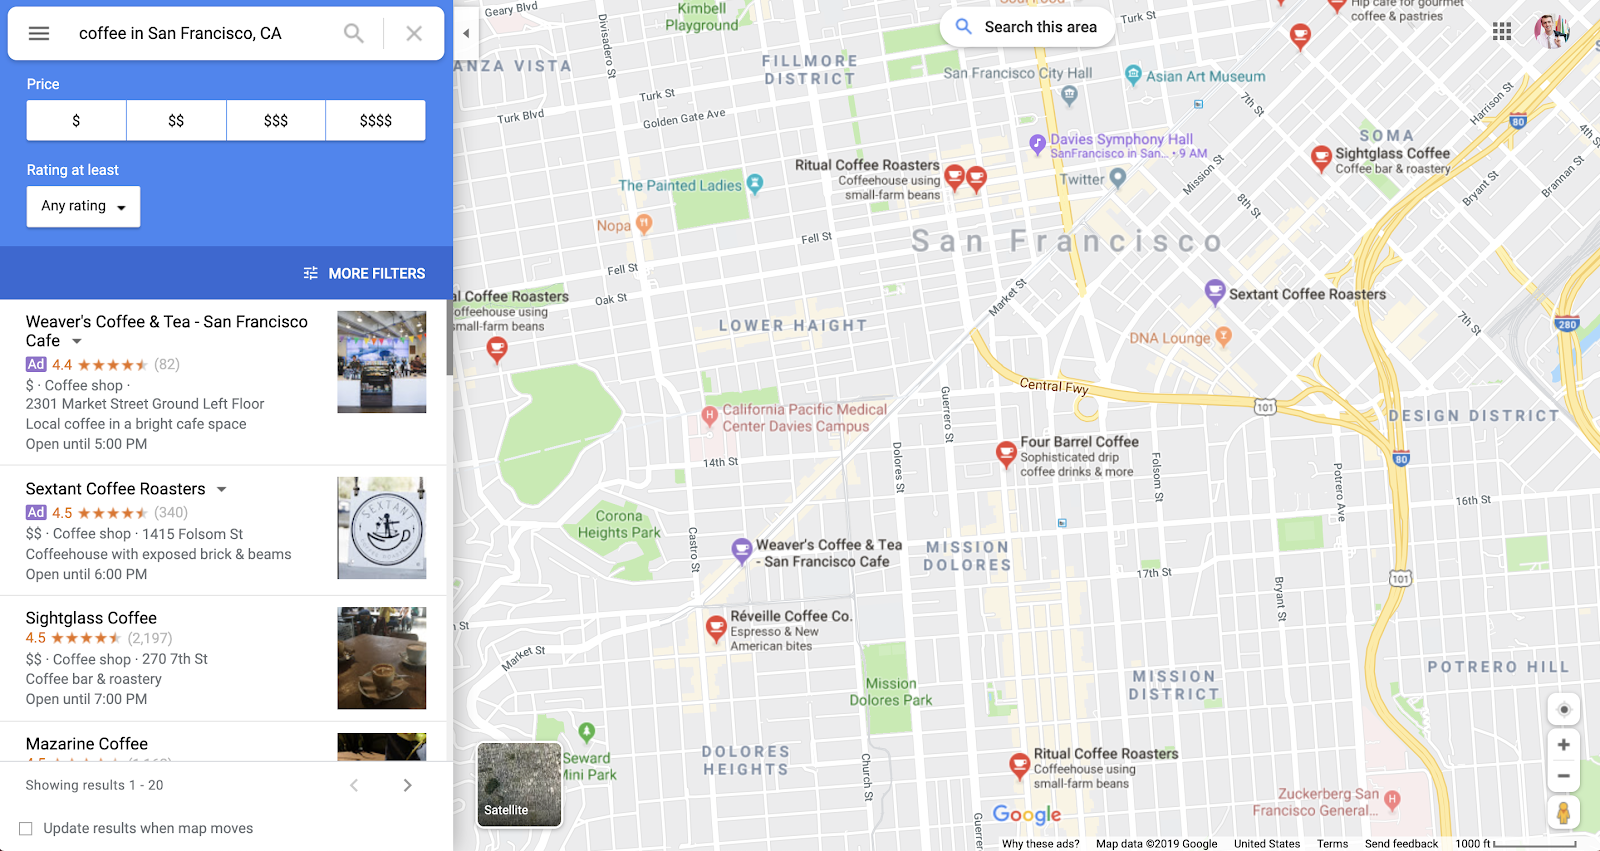 व्यवसाय के लिए ऑनलाइन विज्ञापन: Google मानचित्र उदाहरण पर प्रचारित पिन।